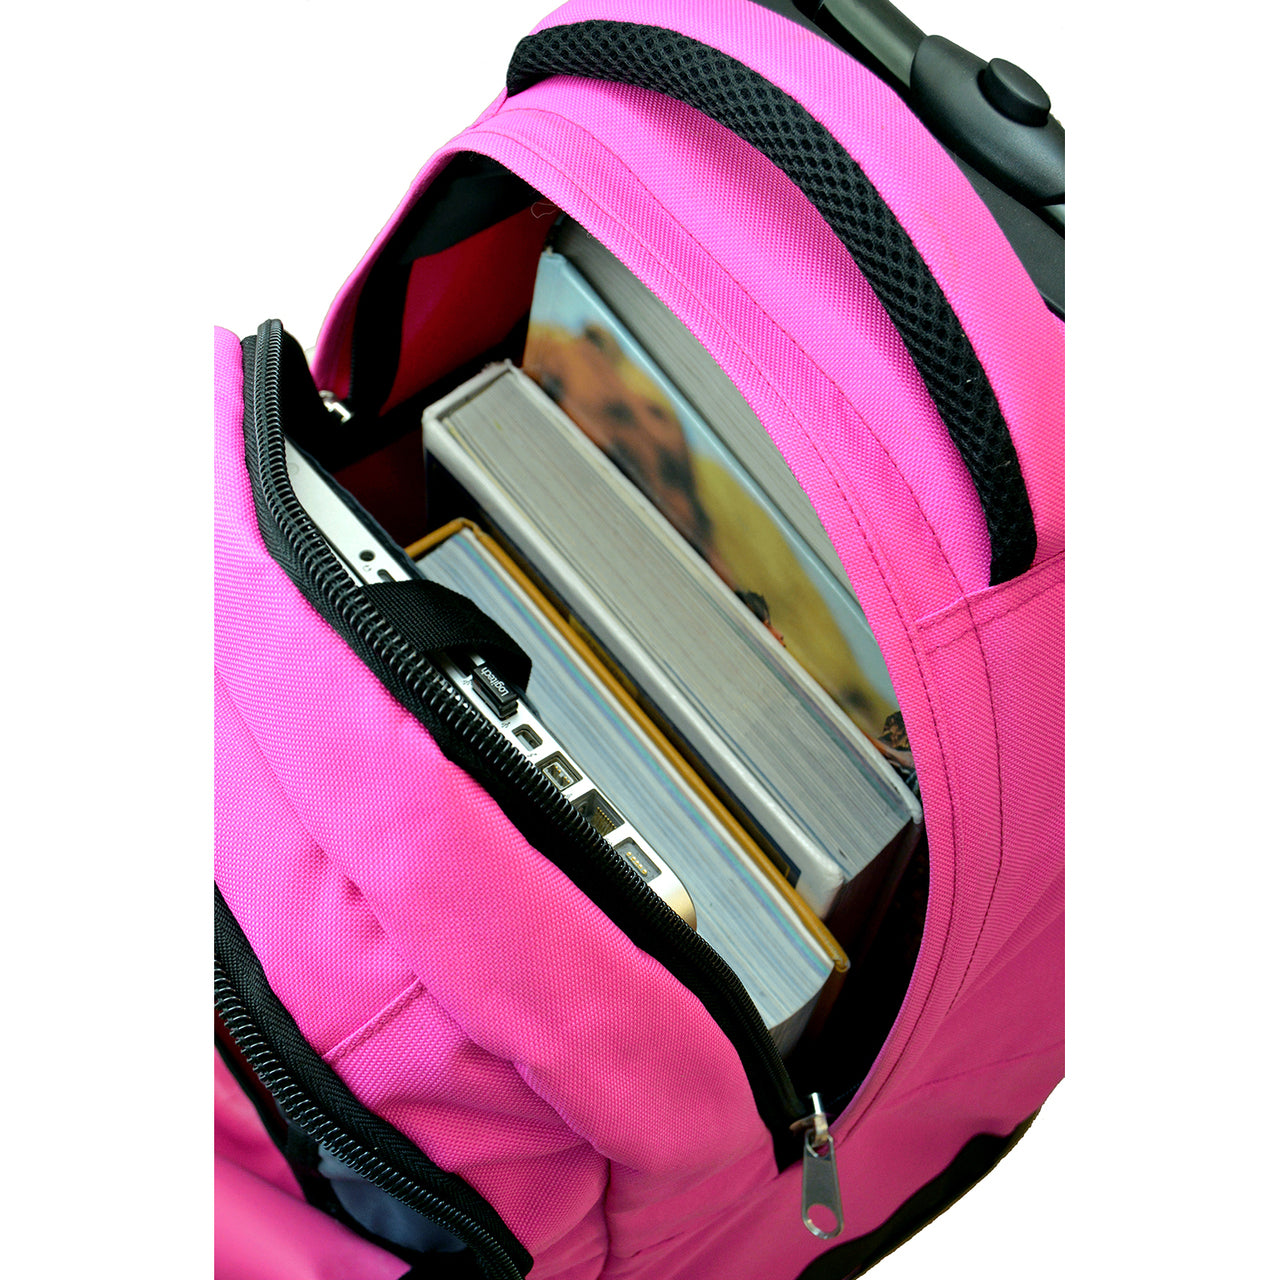 Los Angeles Kings Premium Wheeled Backpack in Pink